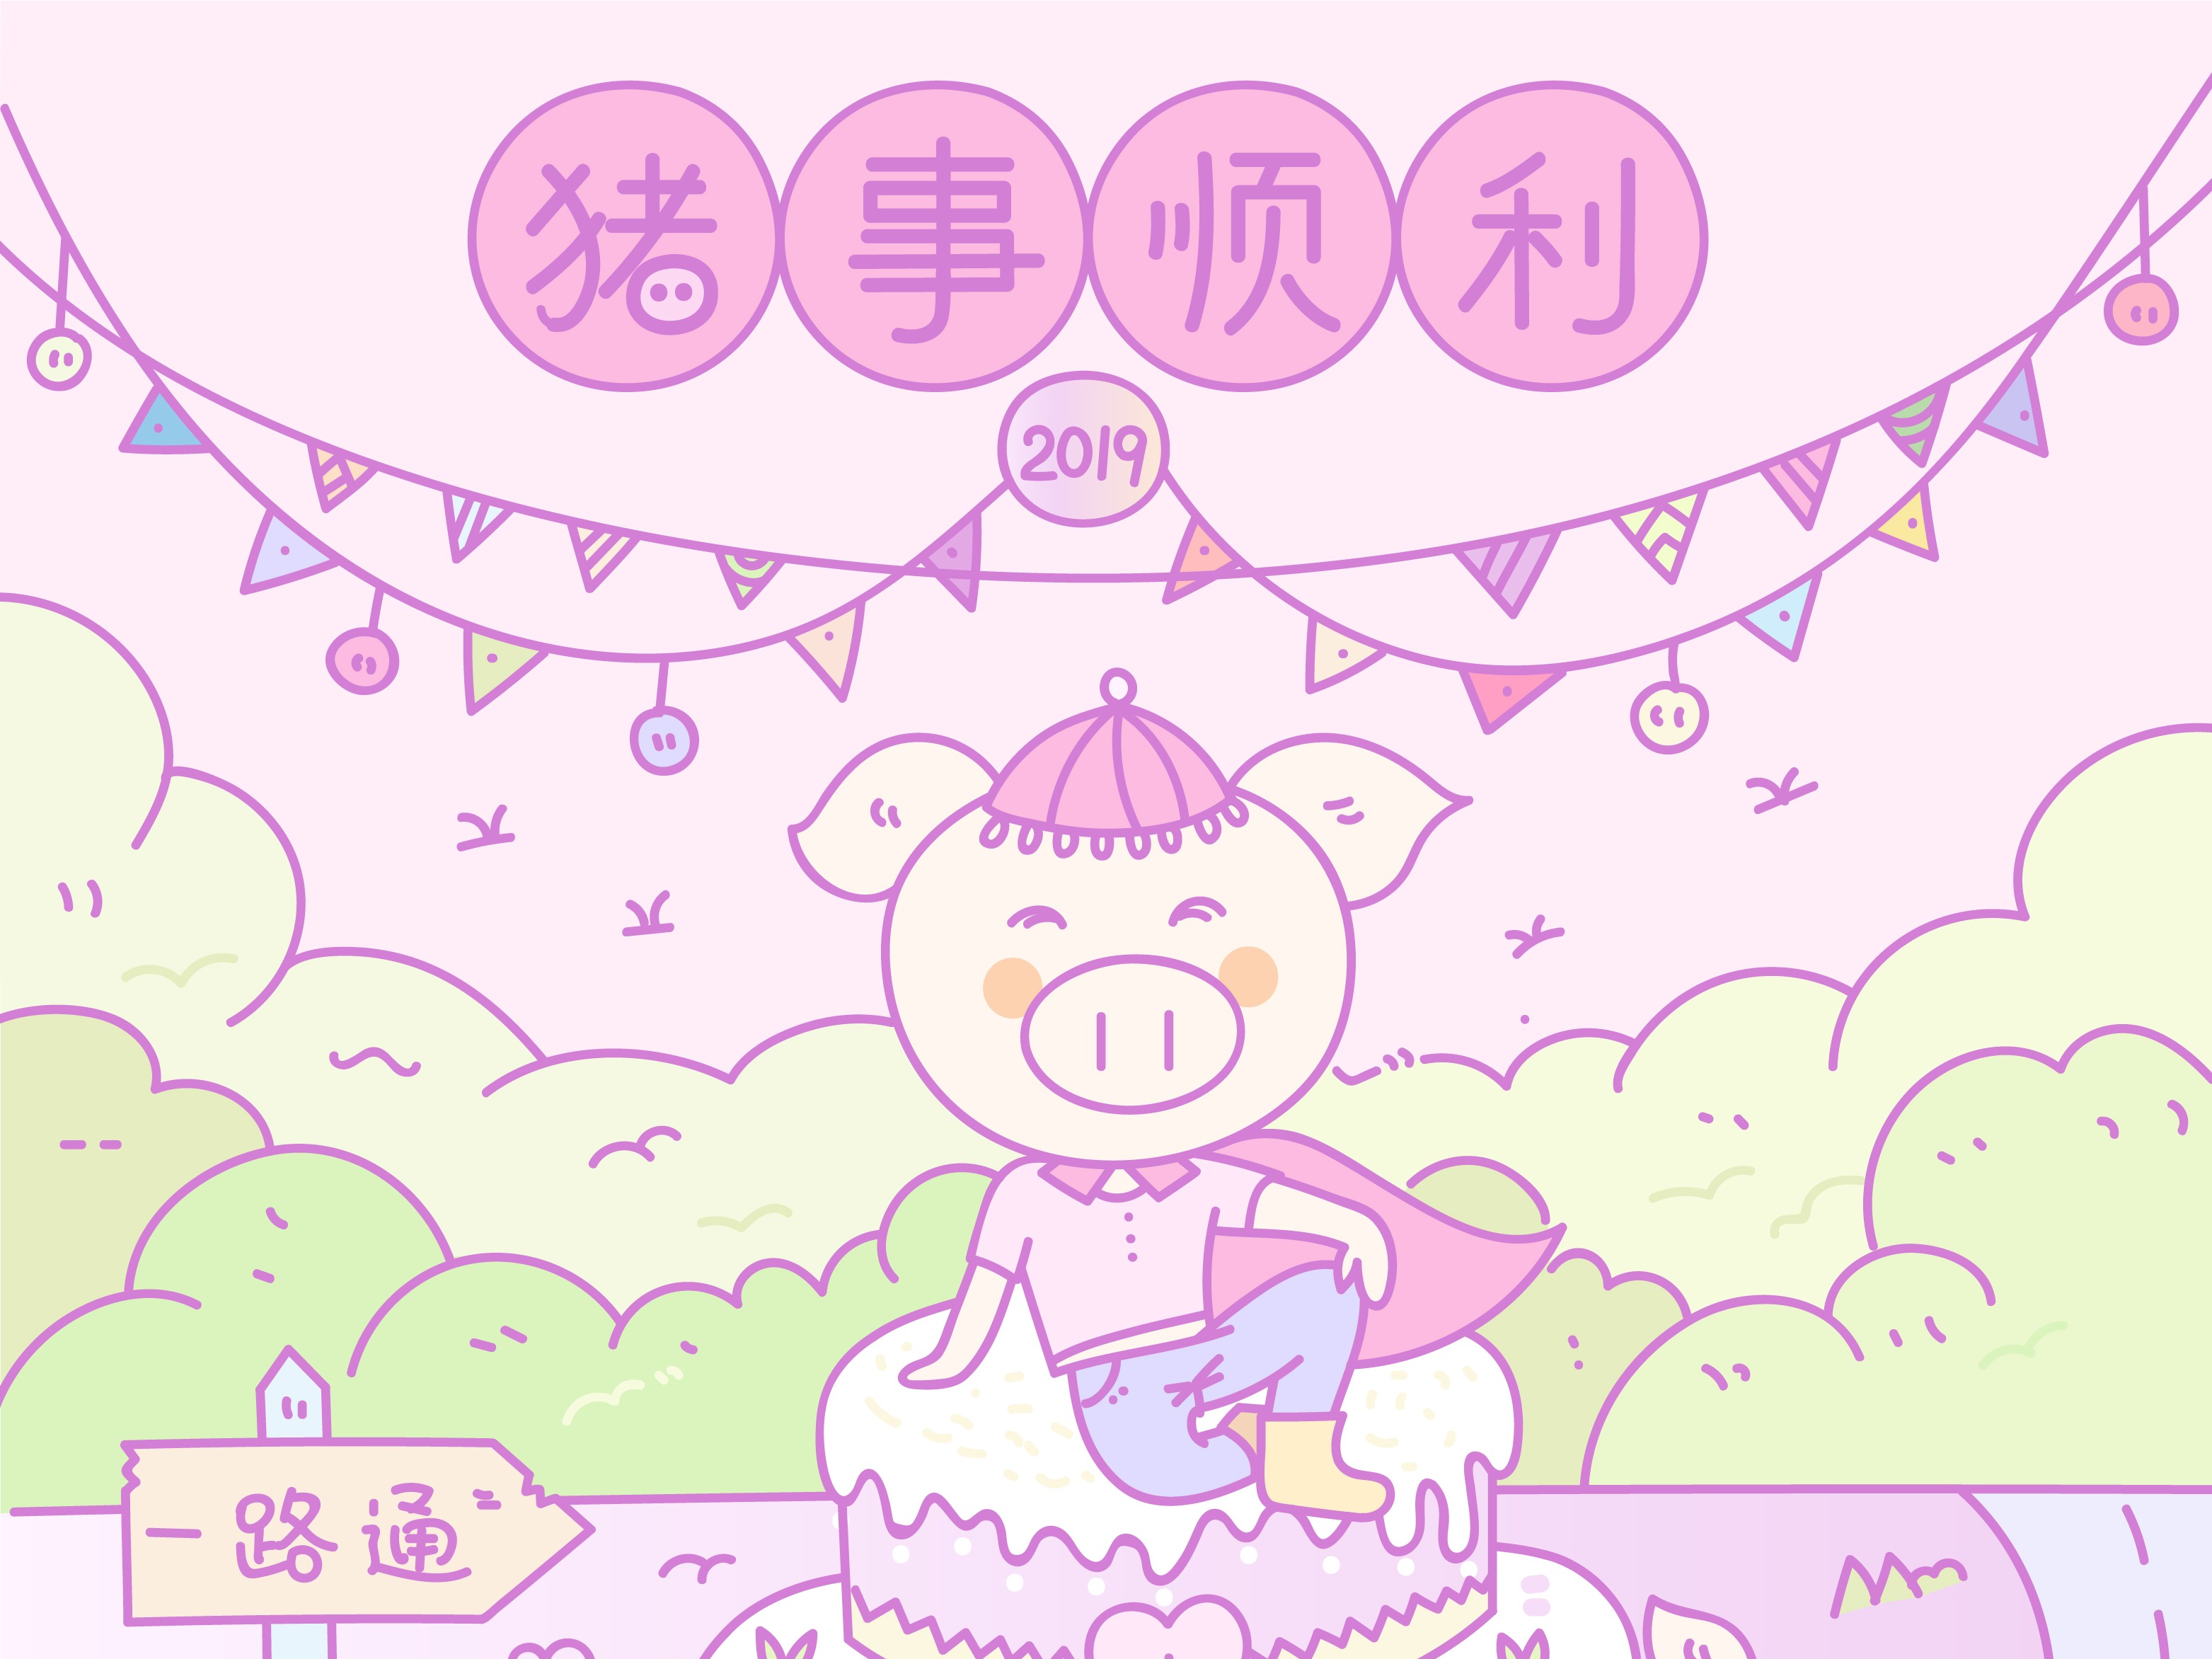 可爱的粉红猪角色抱着心 向量例证. 插画 包括有 生日, 字符, 小猪, 乐趣, 例证, 图画, 粉红色 - 166553272